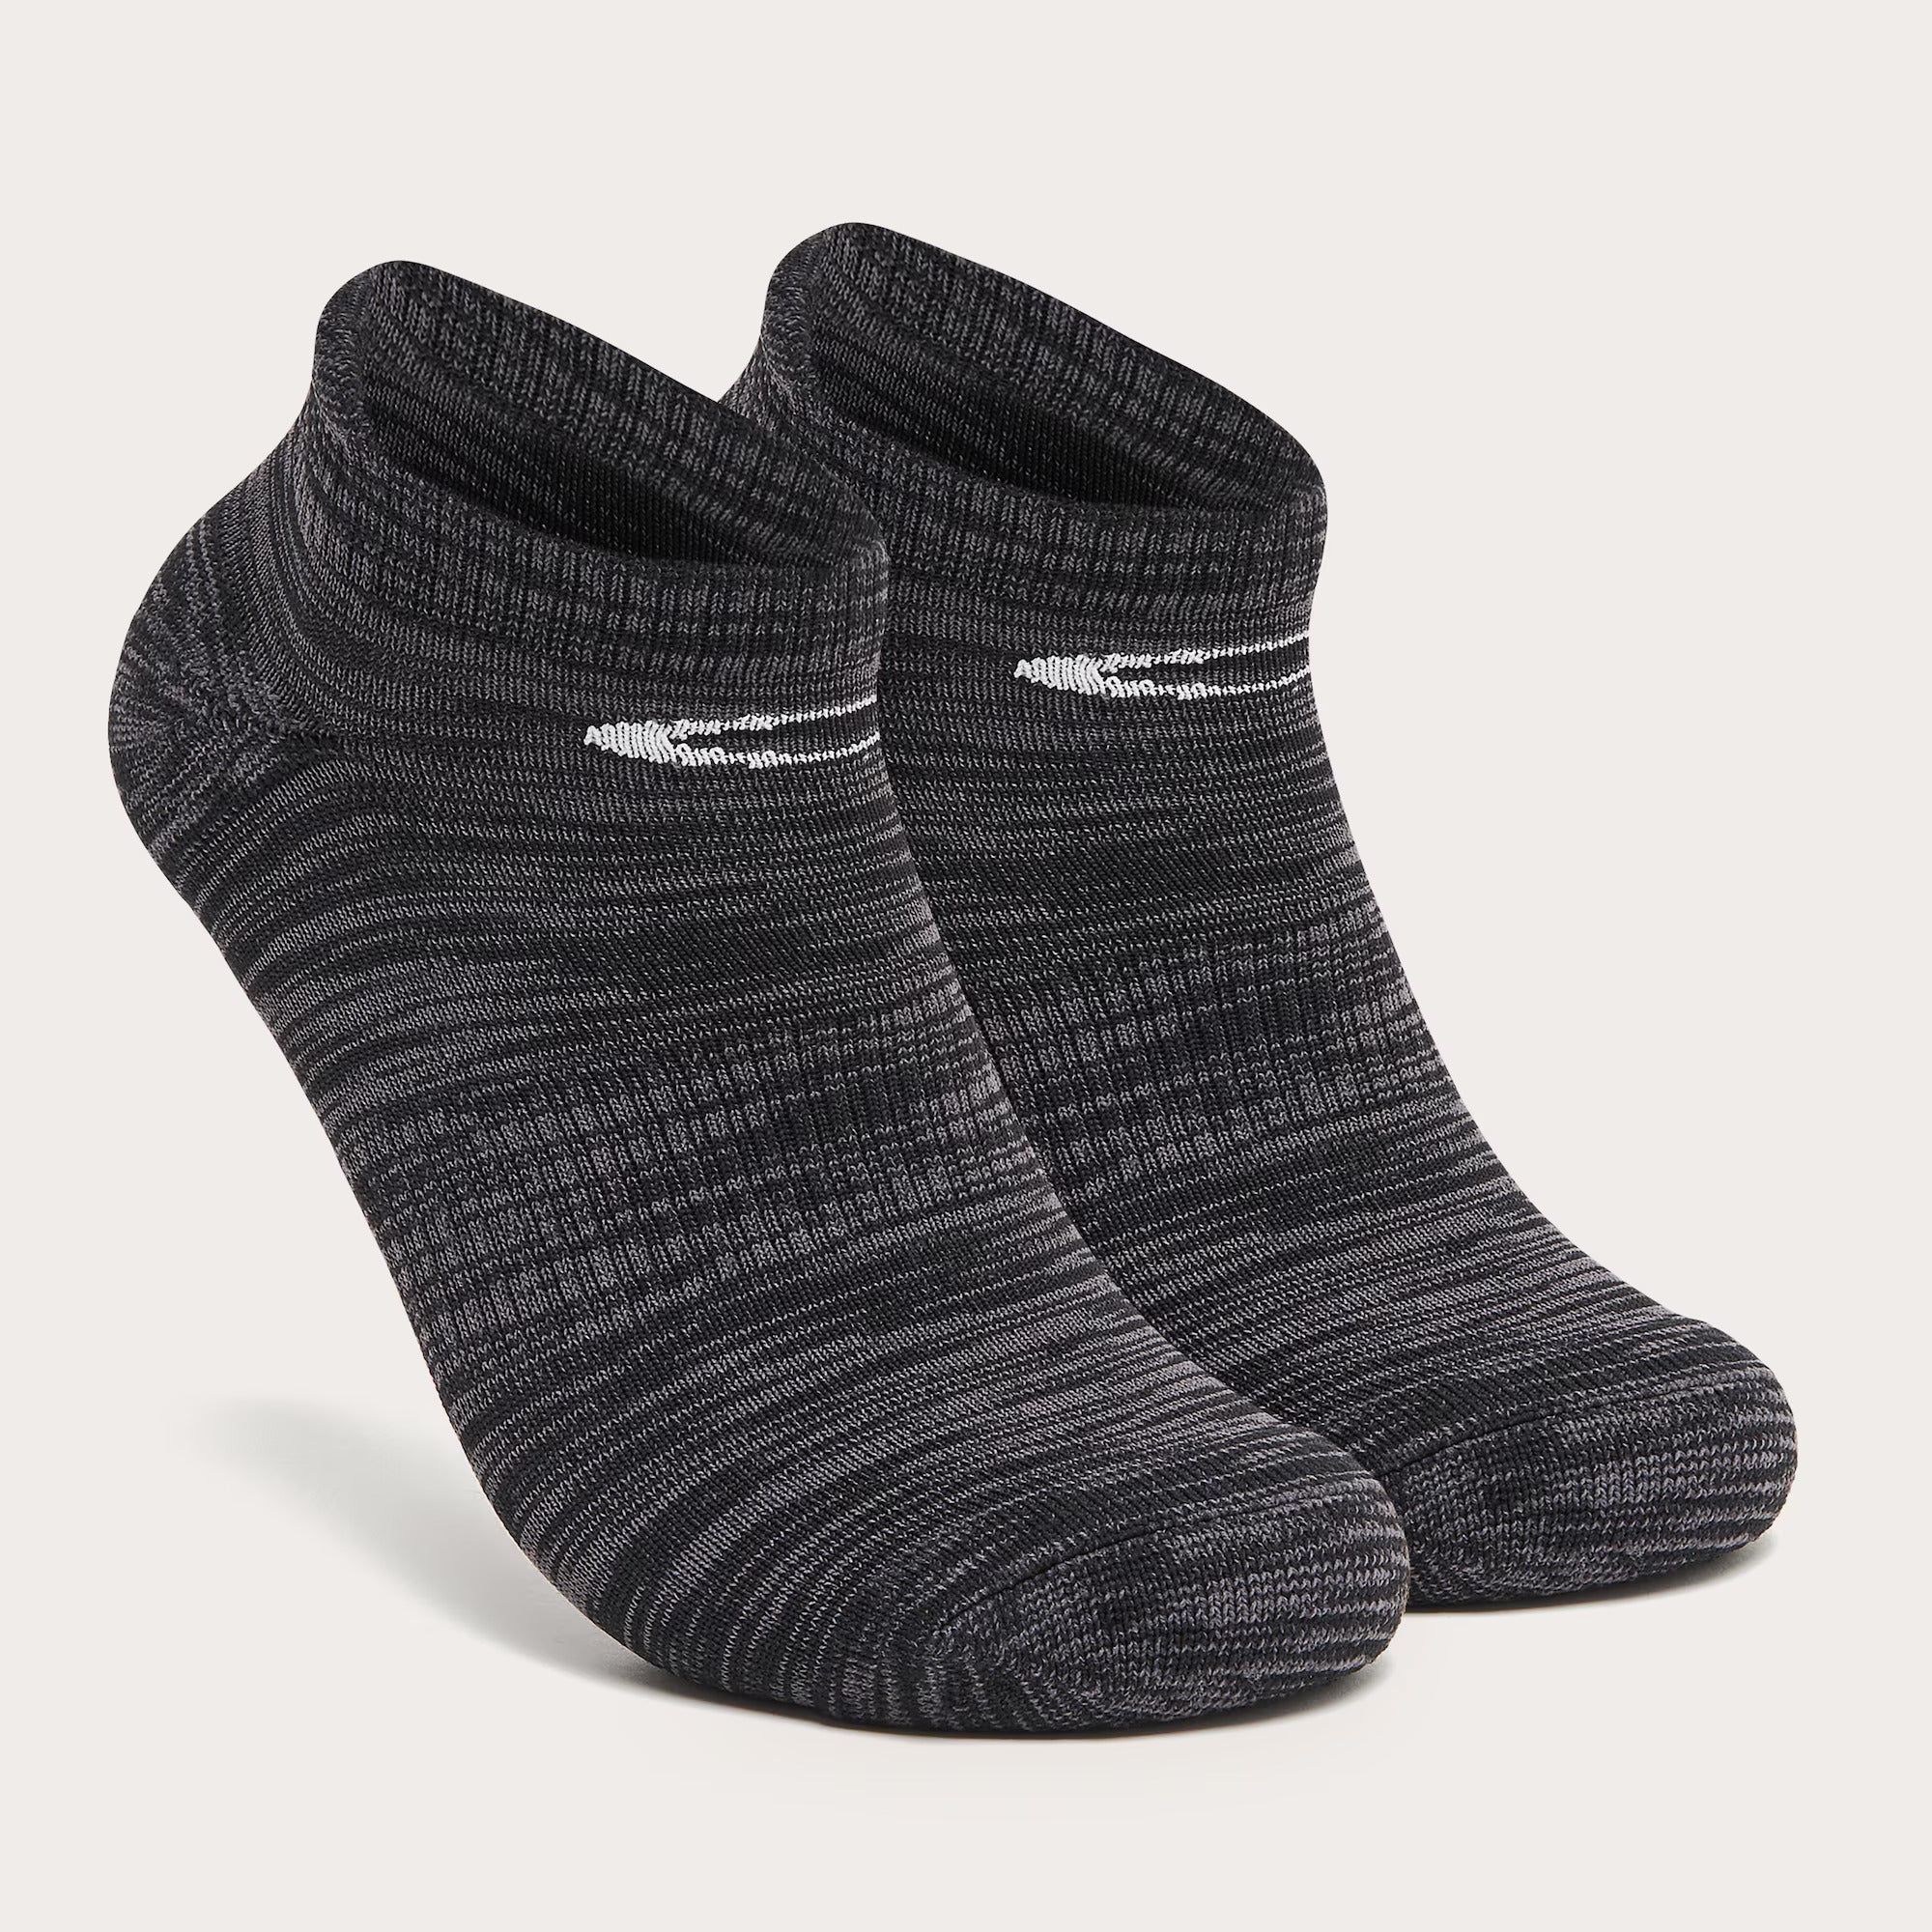 Oakley Ankle Tab Socks